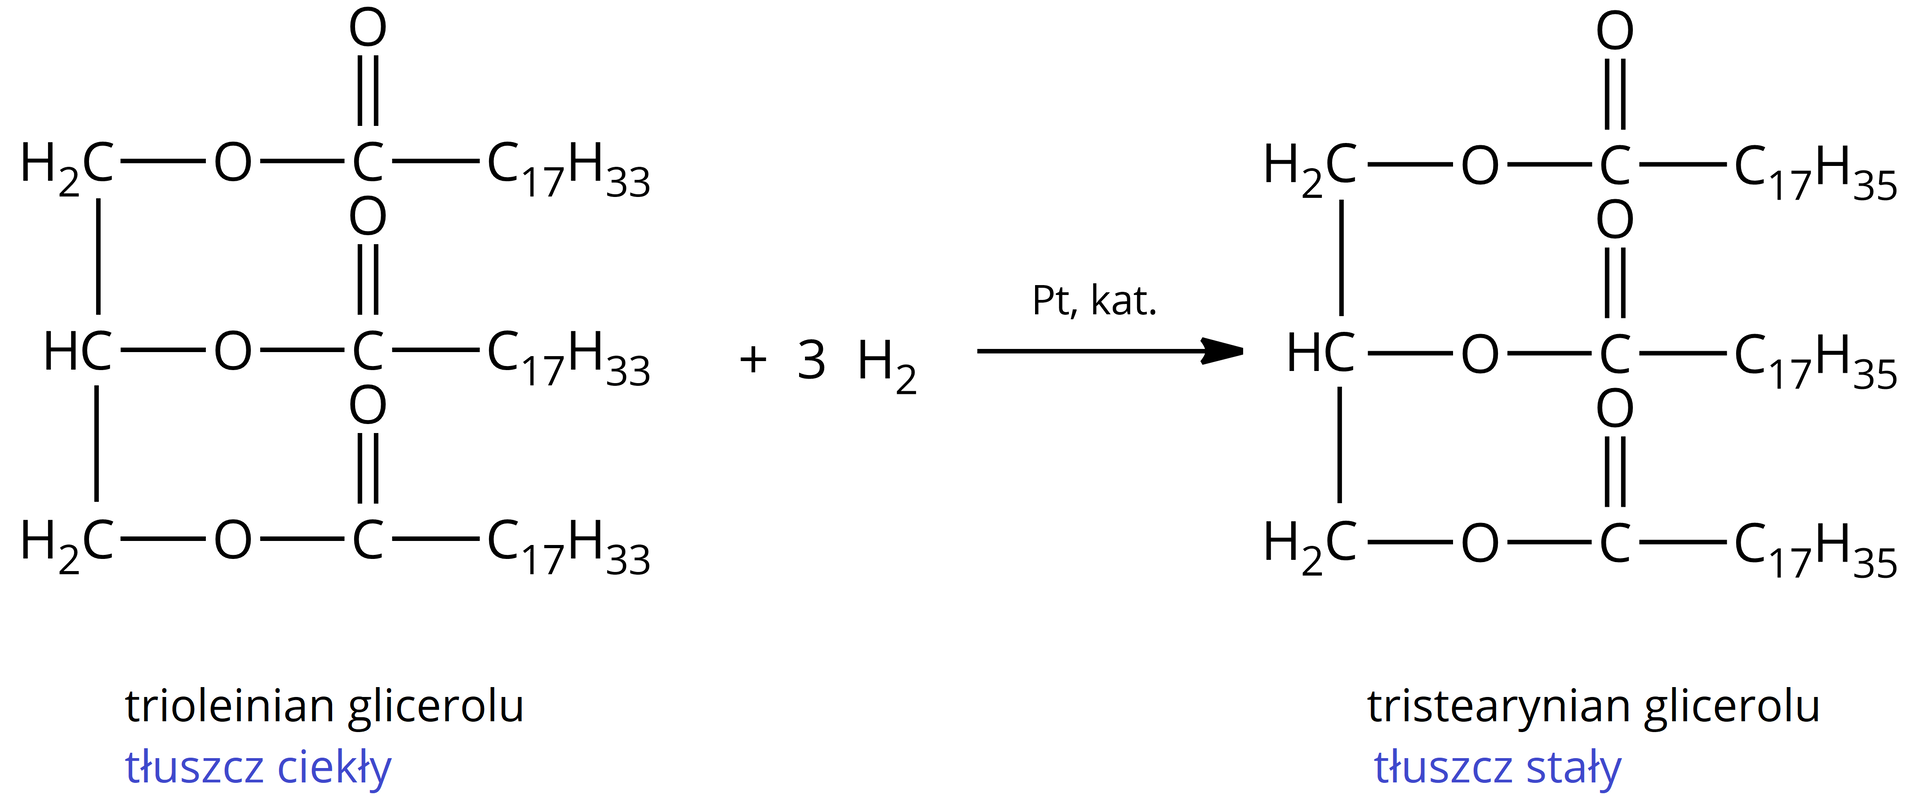 Na ilustracji jest równanie reakcji: jedna cząsteczka trioleinianu glicerolu, tłuszcz ciekły, dodać trzy cząsteczki wodoru strzałka w prawo, nad strzałką jedna cząsteczka platyny, pod strzałką napis: katalizator, jedna cząsteczka tristearynianu glicerolu, tłuszcz stały. 